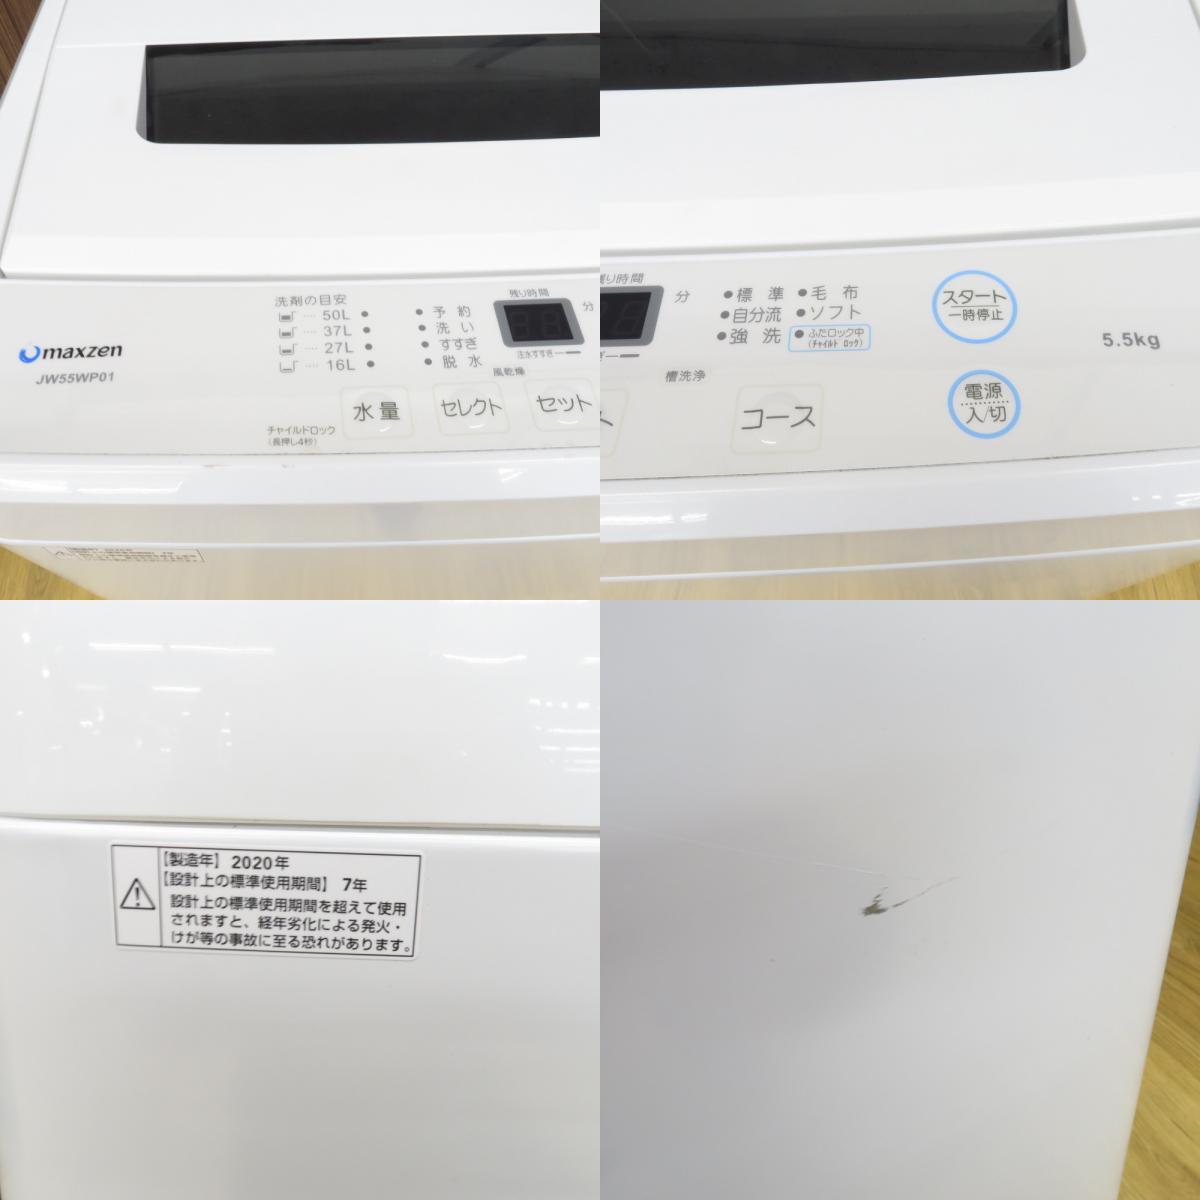 maxzen マクスゼン 全自動電気洗濯機 JW55WP01WH 5.5kg 2020年製 ホワイト 簡易乾燥機能付 一人暮らし 洗浄・除菌済み_画像9